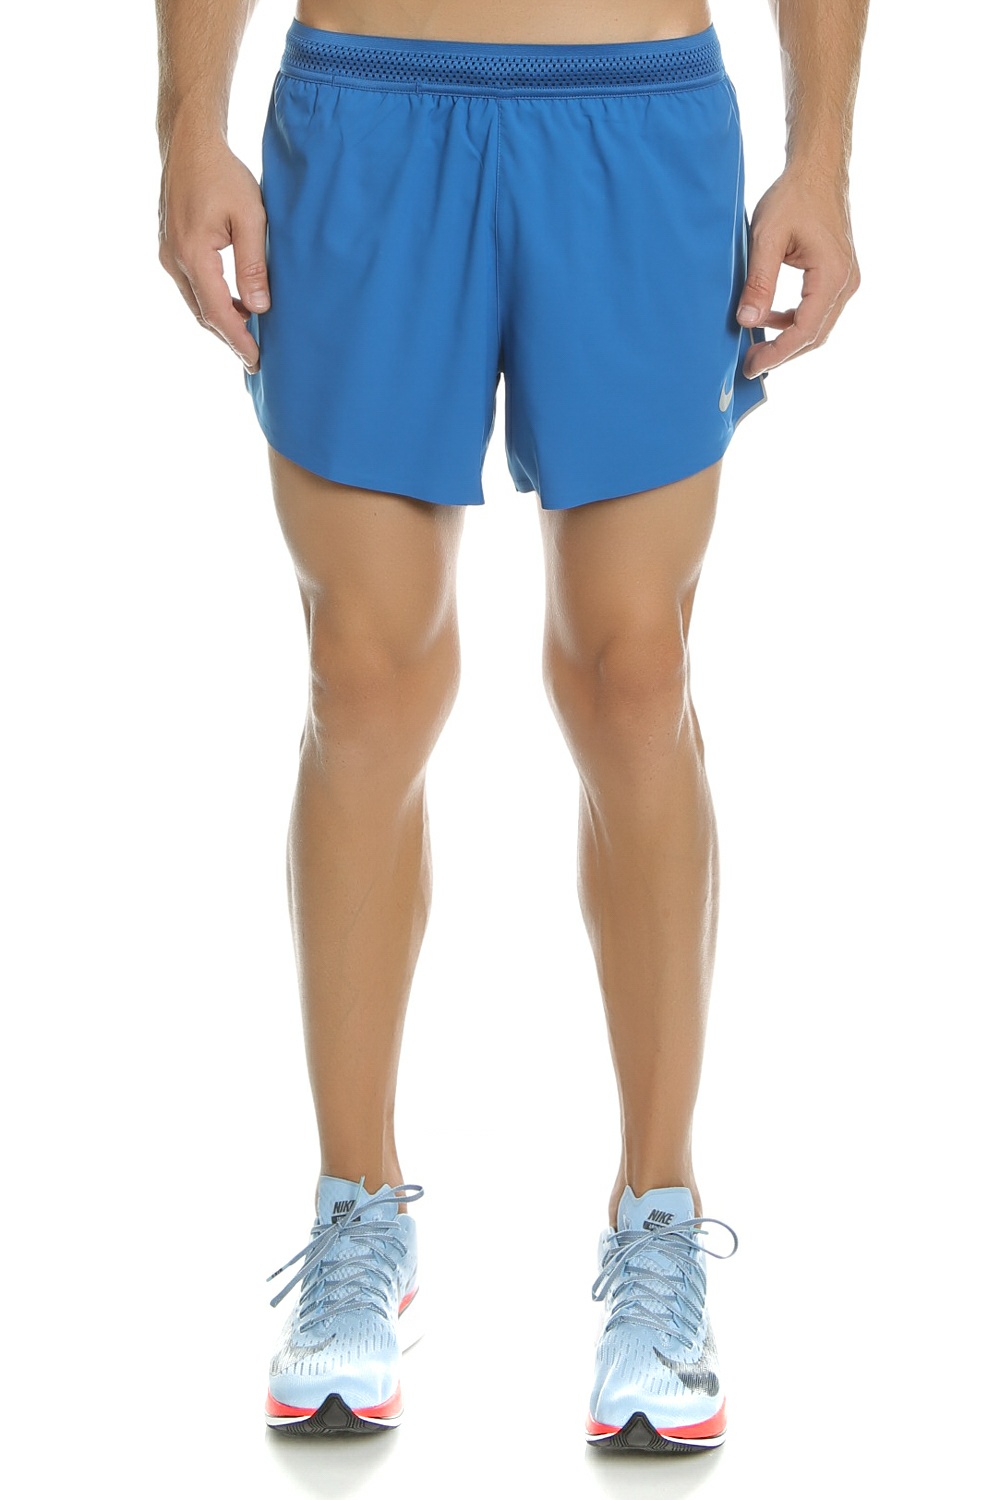 Ανδρικά/Ρούχα/Σορτς-Βερμούδες/Αθλητικά NIKE - Ανδρικό σορτς NIKE AEROSWIFT μπλε